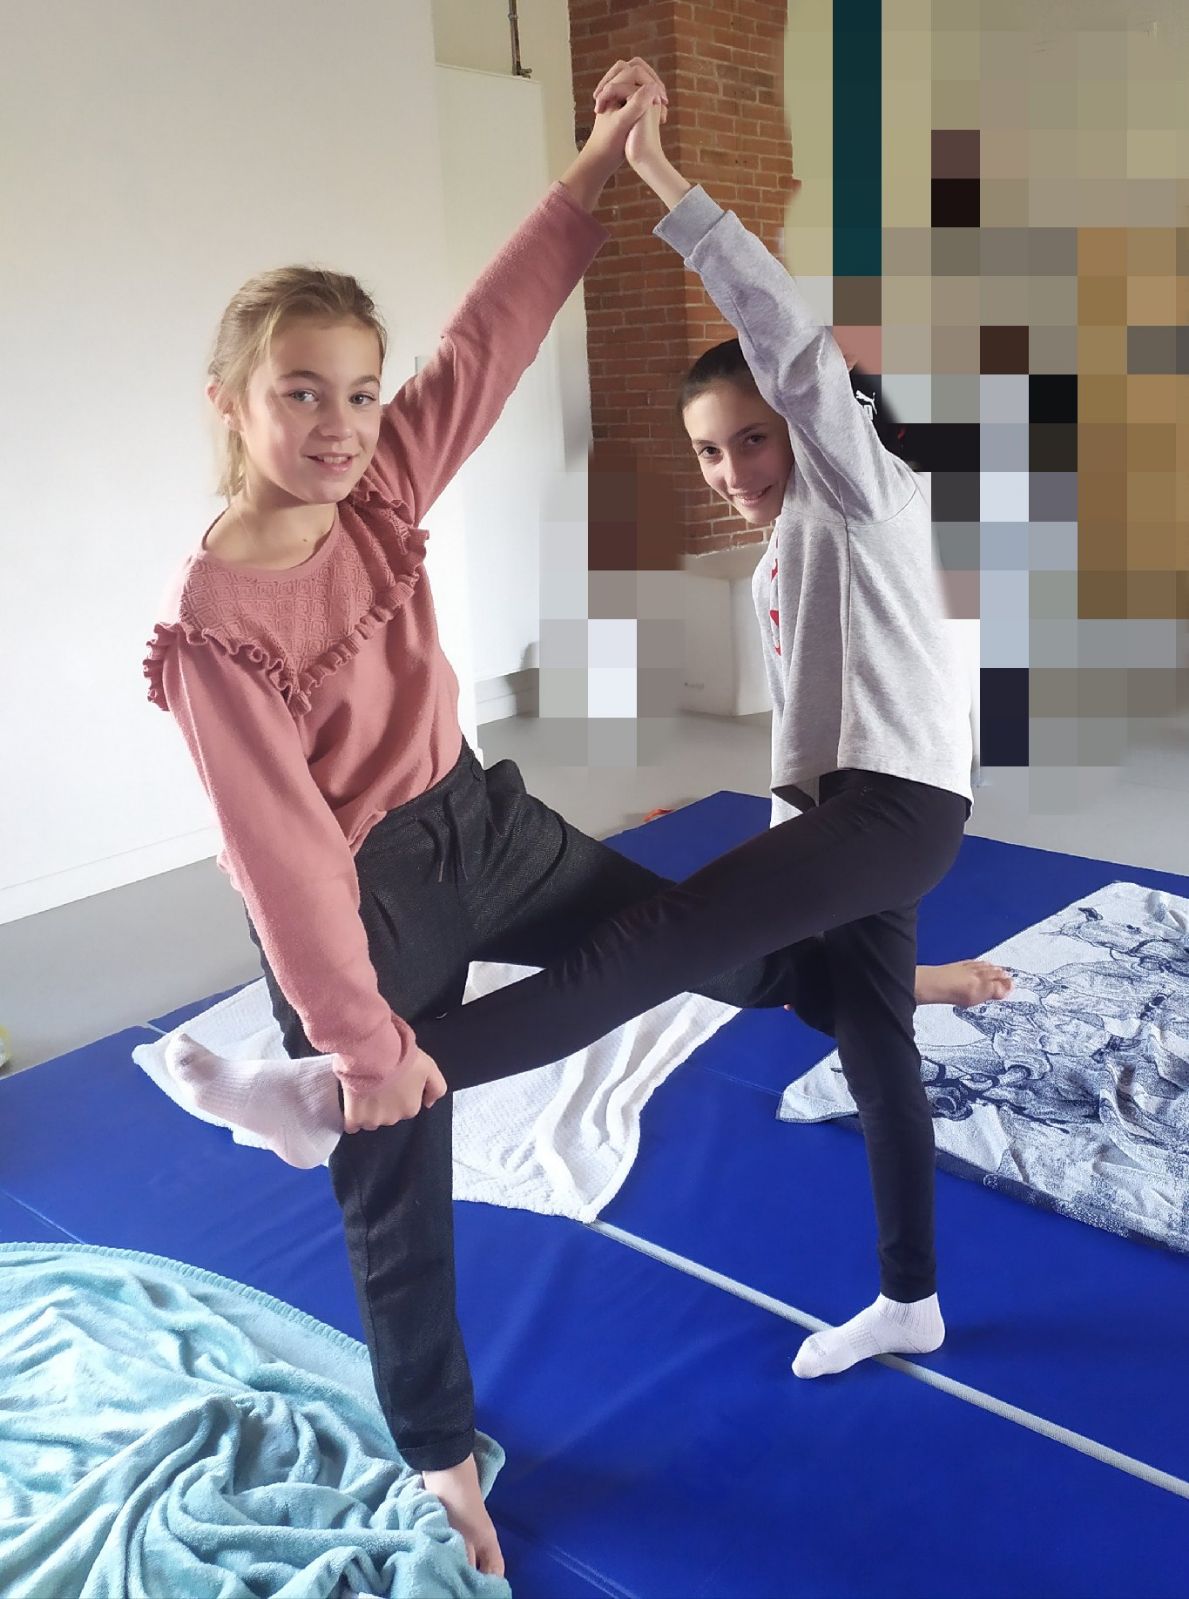 Initiation au yoga